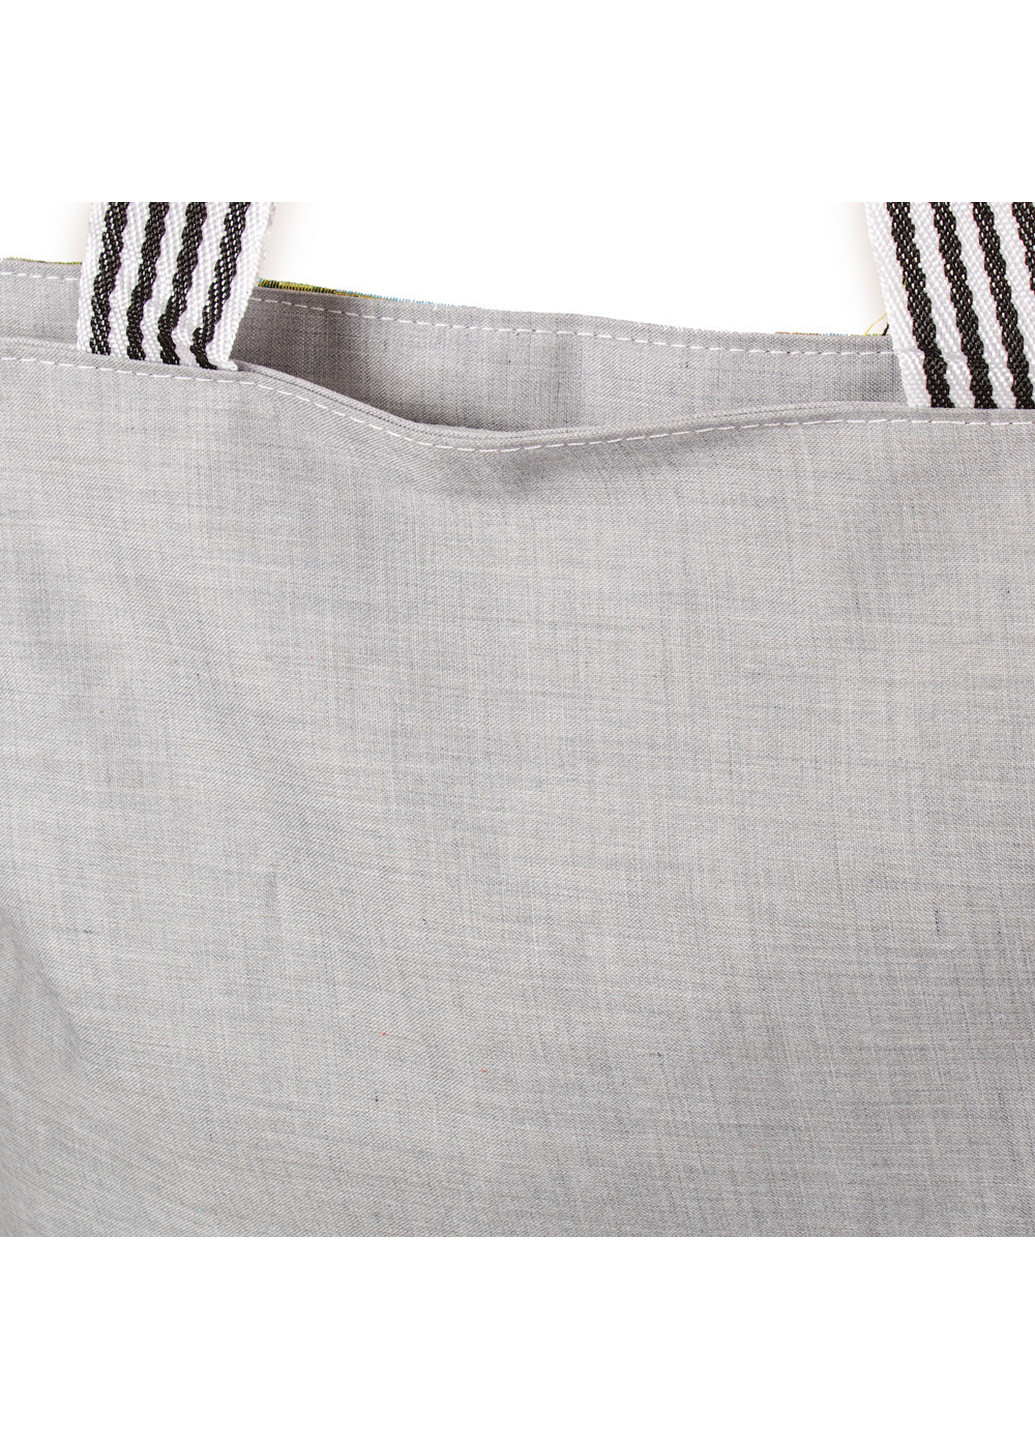 Жіноча пляжна тканинна сумка 37х37,5х10 см Valiria Fashion (210338746)